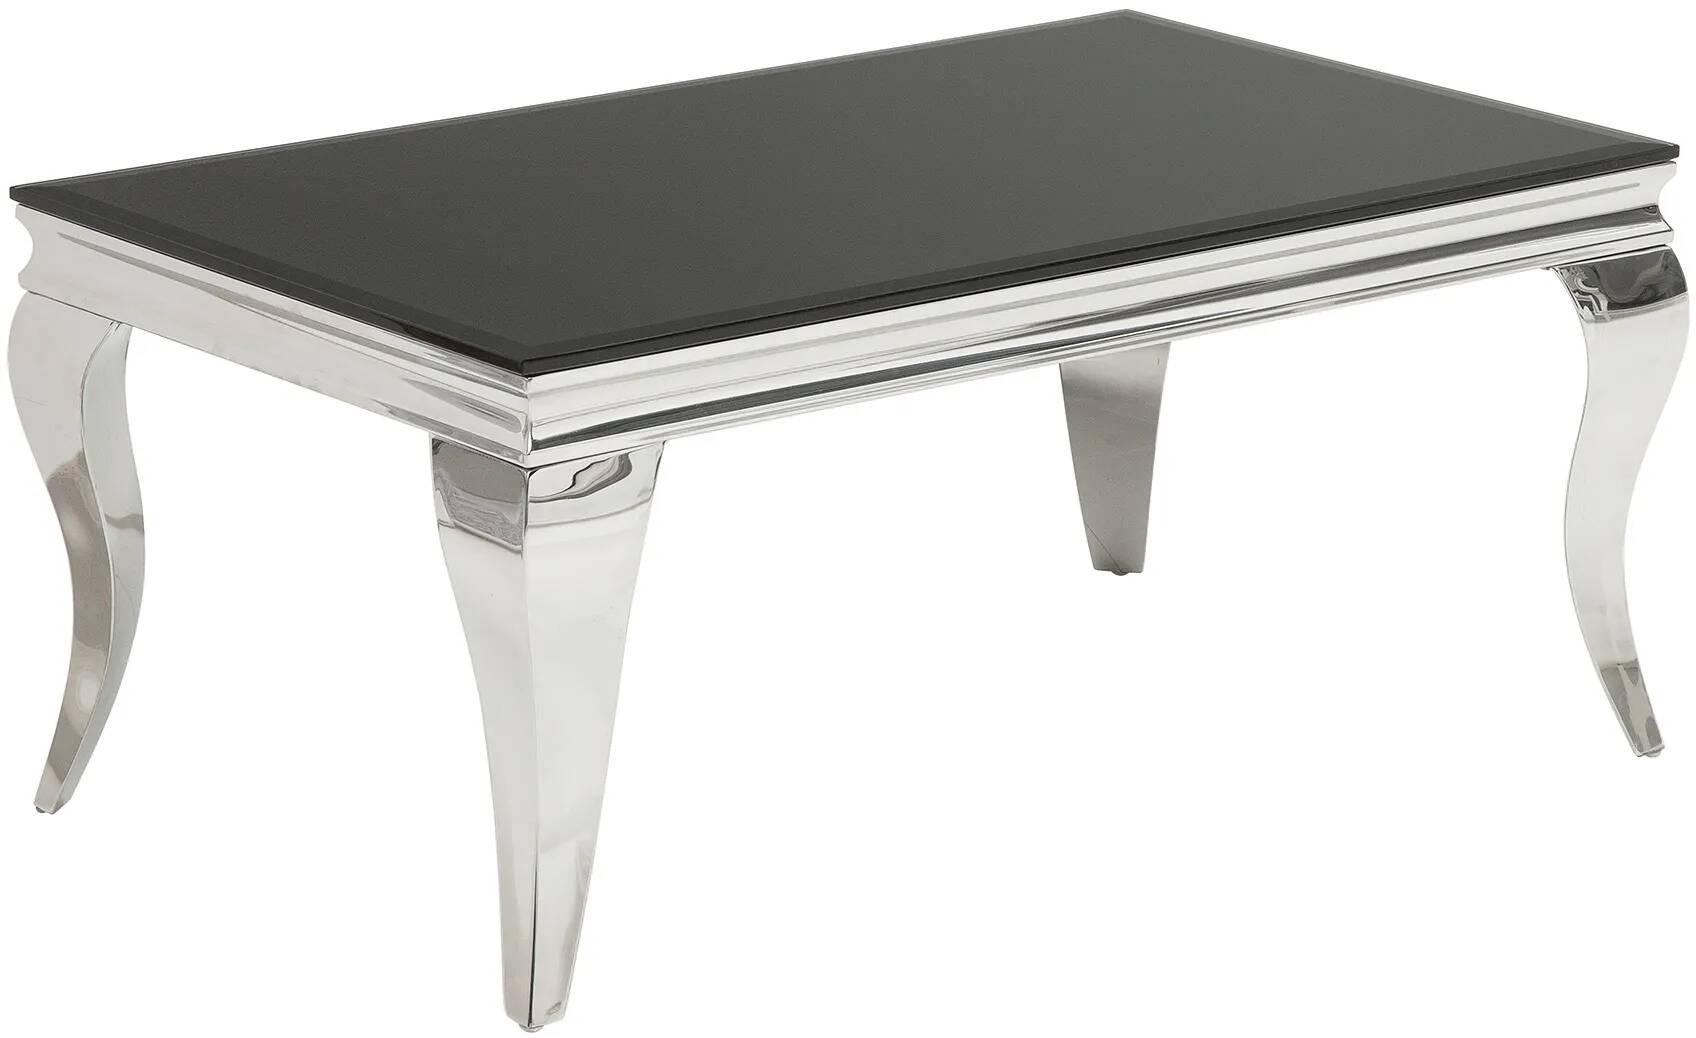 Table basse en acier inoxydable chromé et verre noir L100